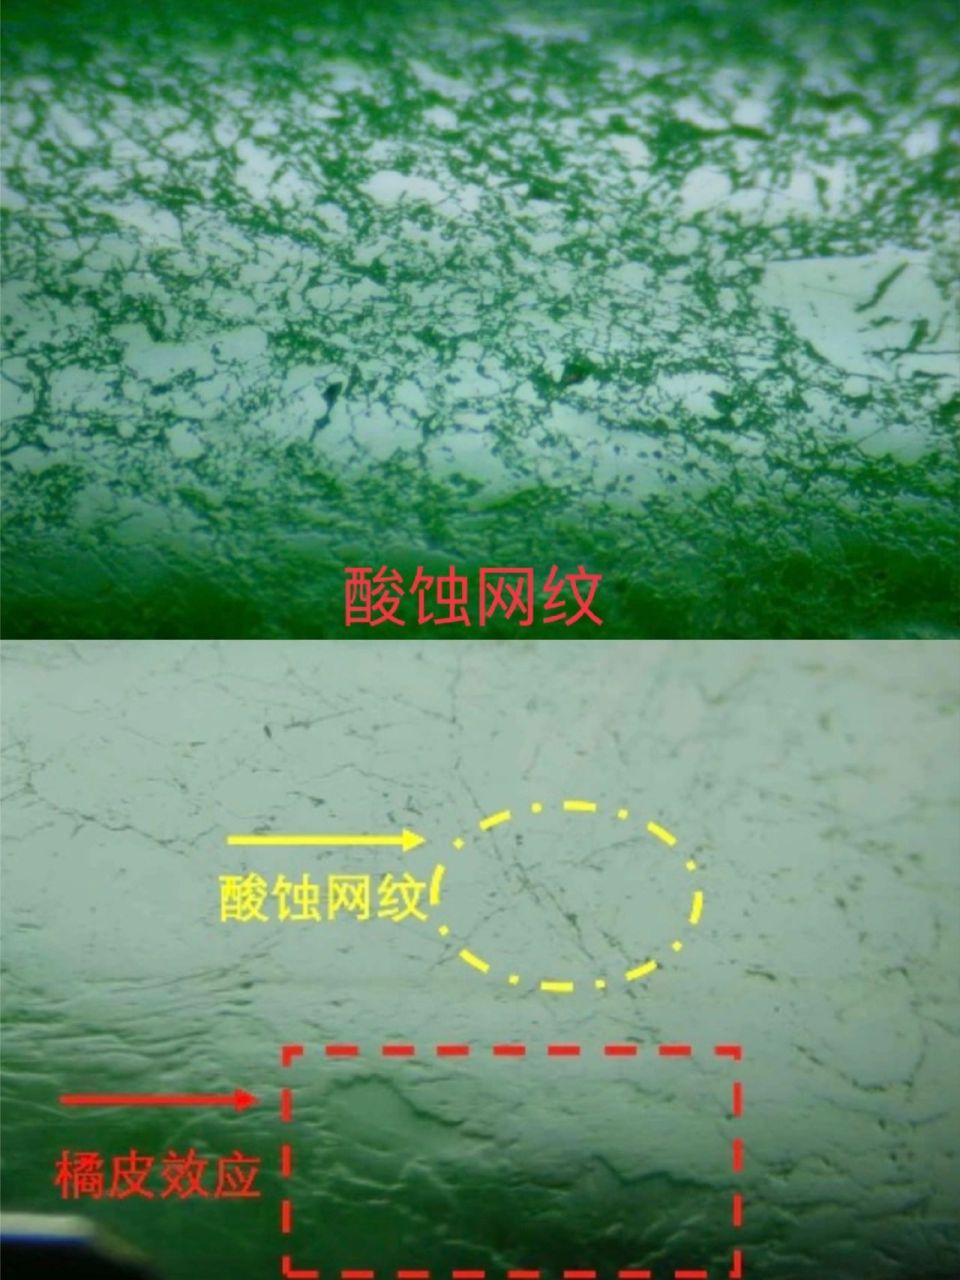 翡翠鉴定 (1)酸蚀网纹 是鉴别酸洗充胶处理翡翠非常关键的证据